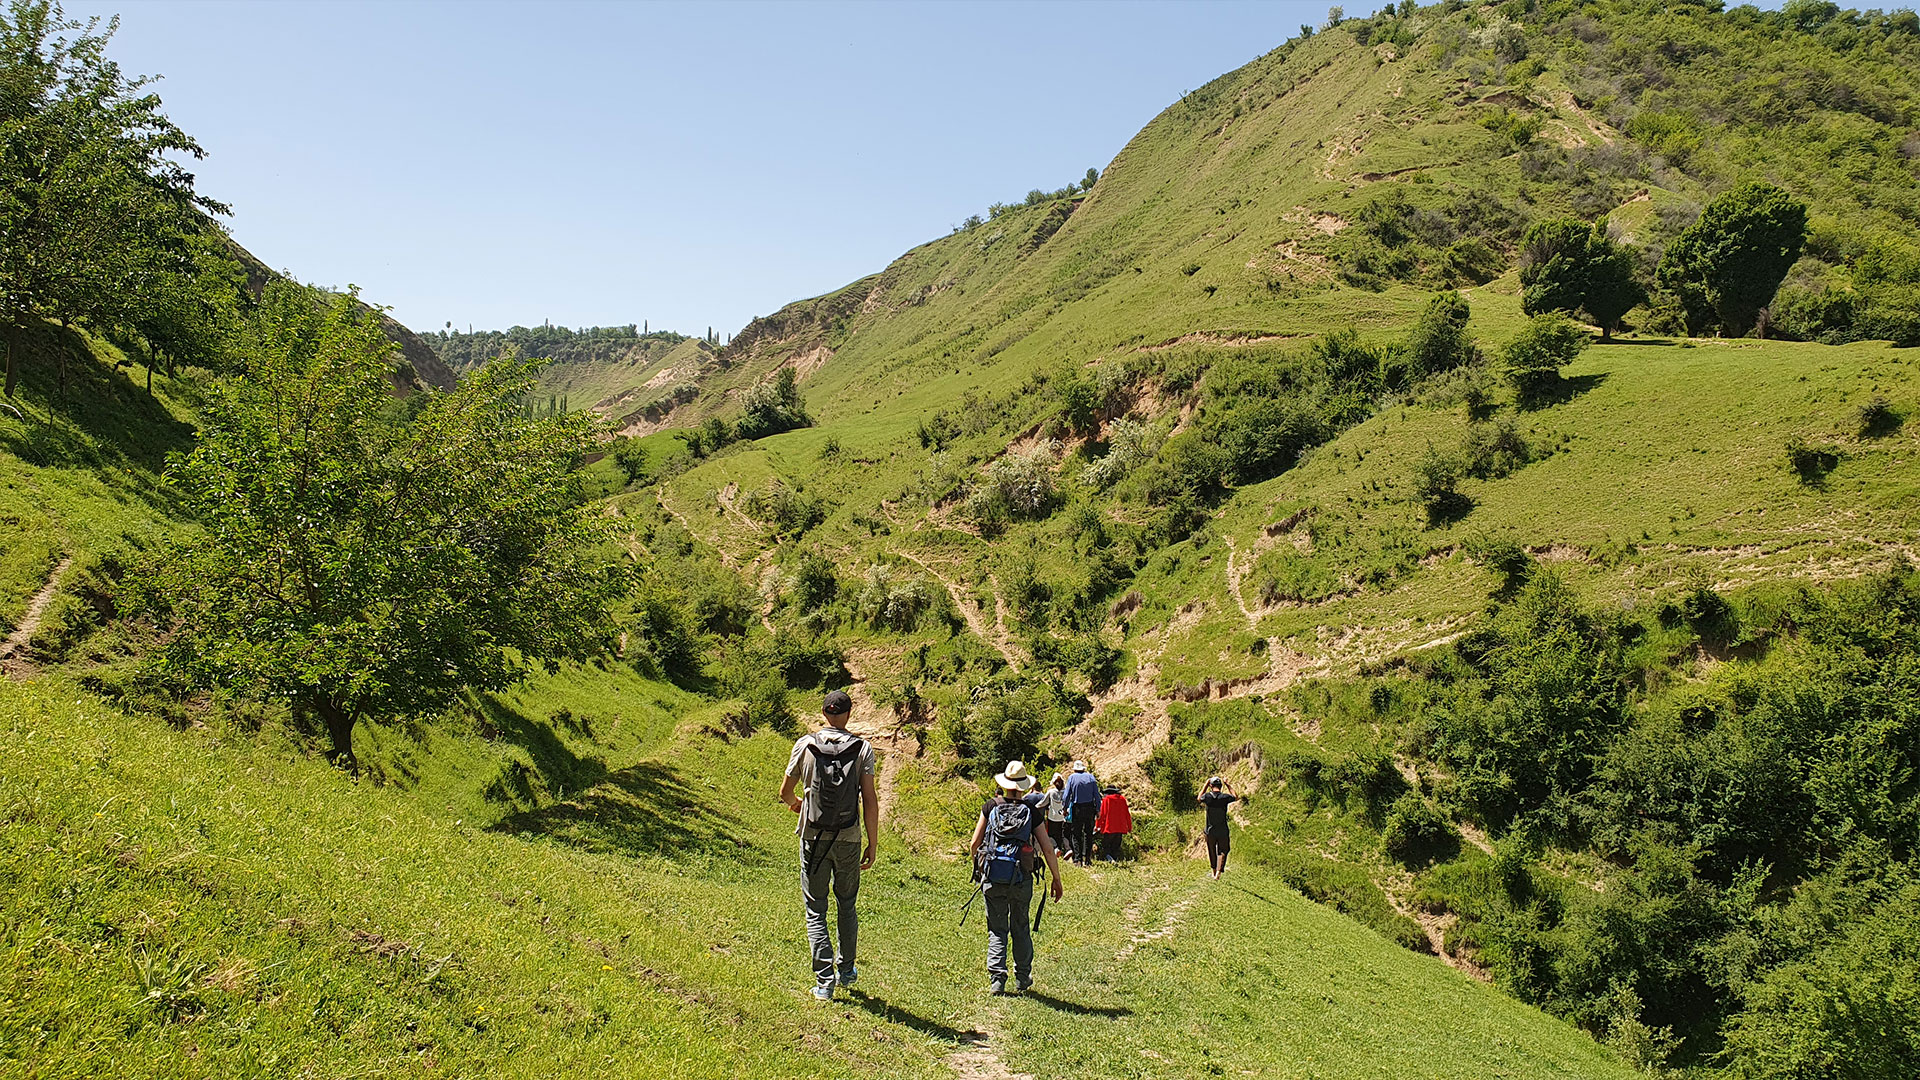 Mennesker går gennem grønt landskabet i Khovaling regionen i Tajikistan. Foto: Miriam Meister